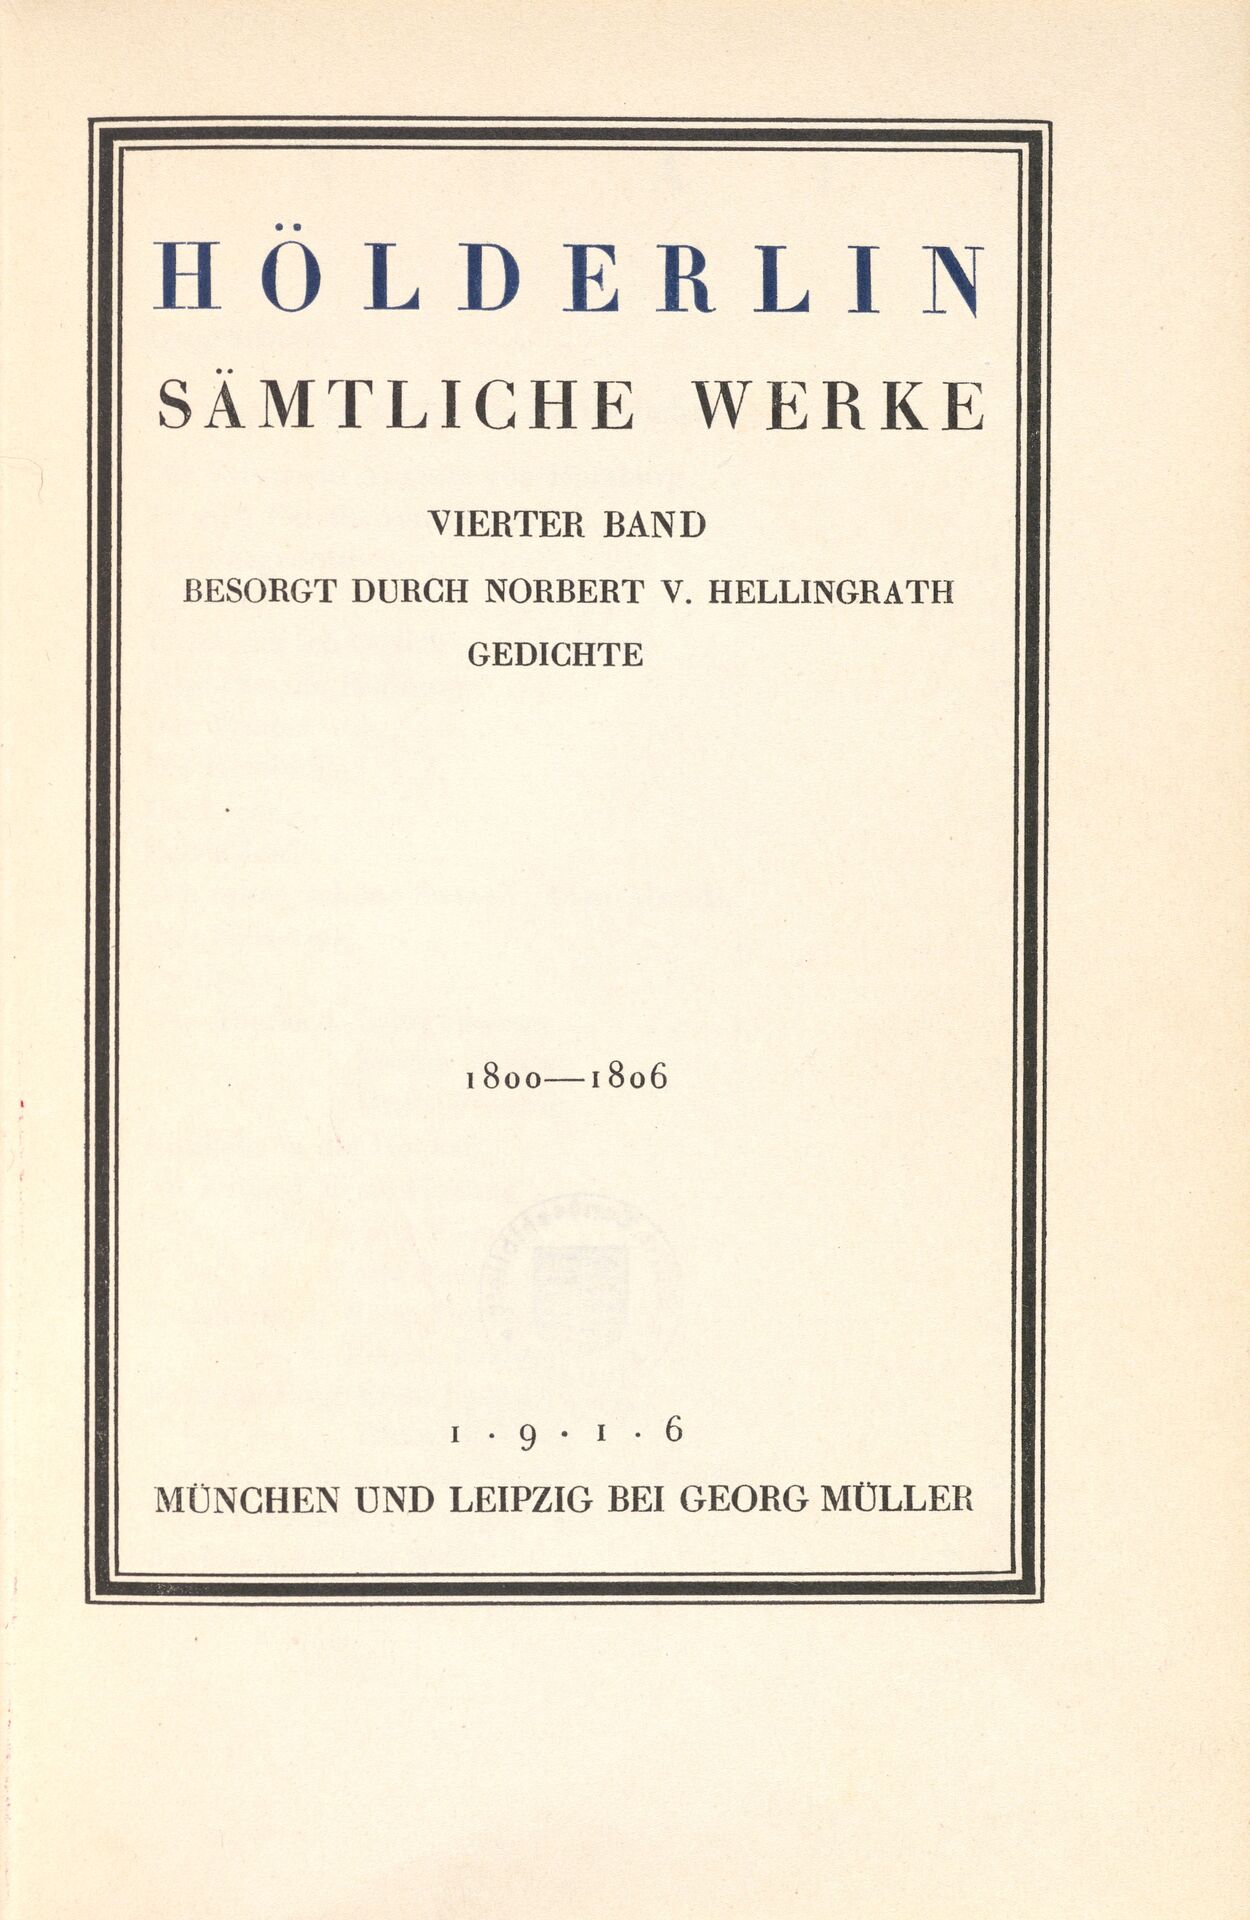 35b_Sämtliche Werke, Titelblatt 2 HA 1951.158.jpg